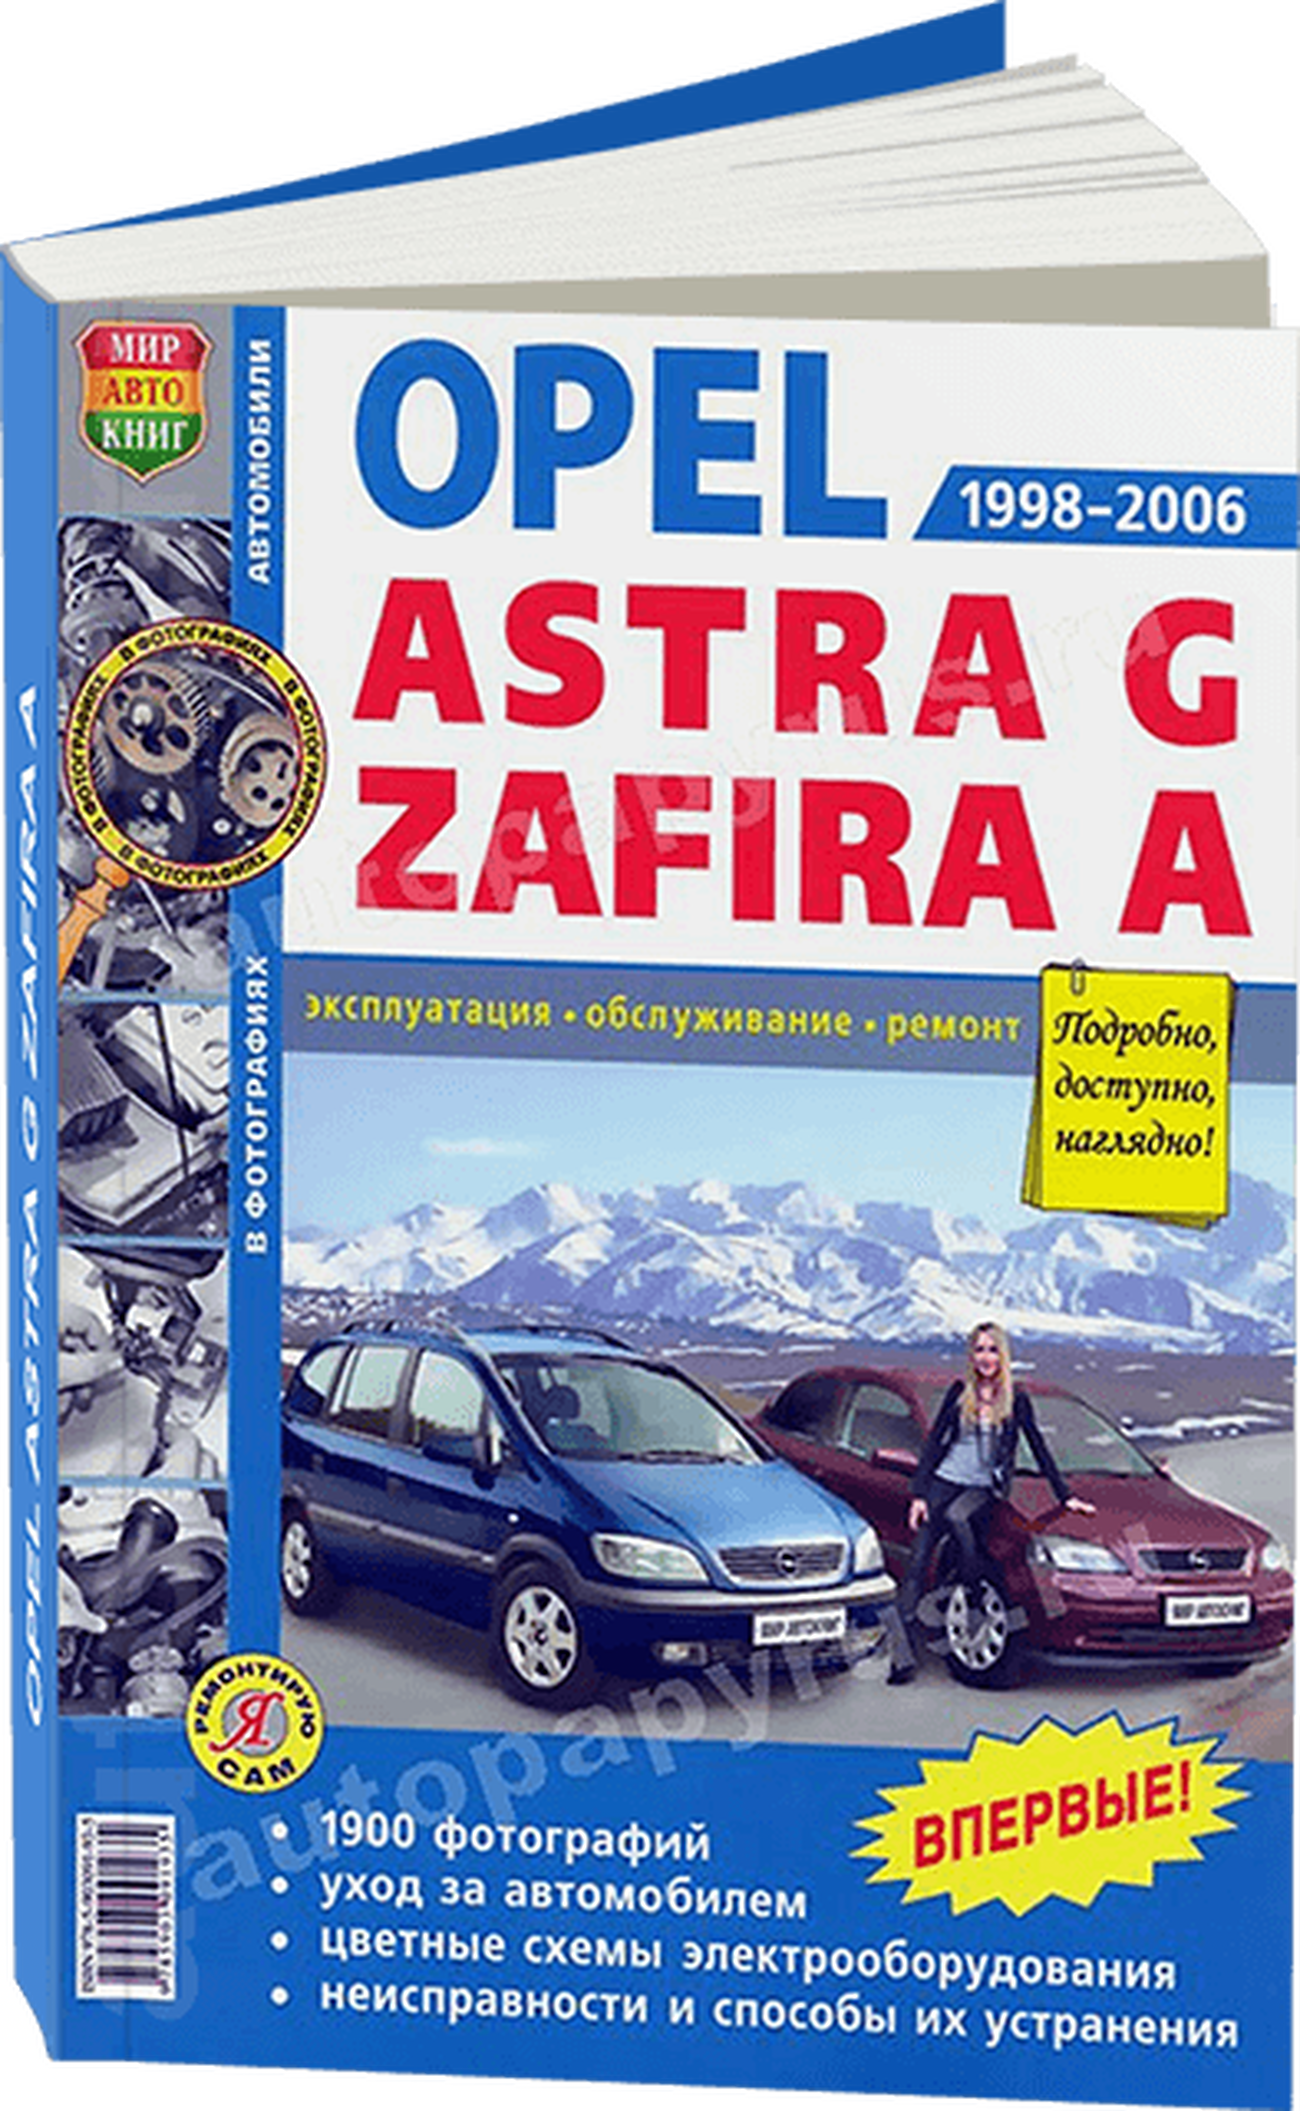 Книга: OPEL ASTRA G / ZAFIRA A (б) 1998-2006 г.в., рем., экспл., то, Ч/Б фото., сер. ЯРС | Мир Автокниг